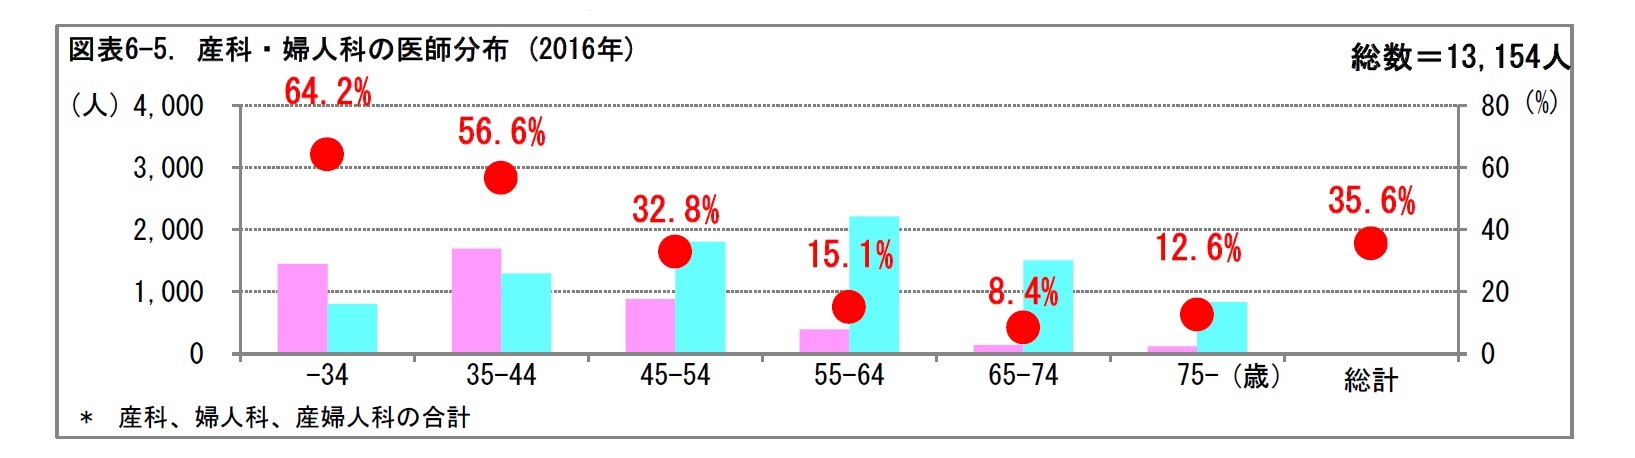 図表6-5. 産科・婦人科の医師分布 (2016年)